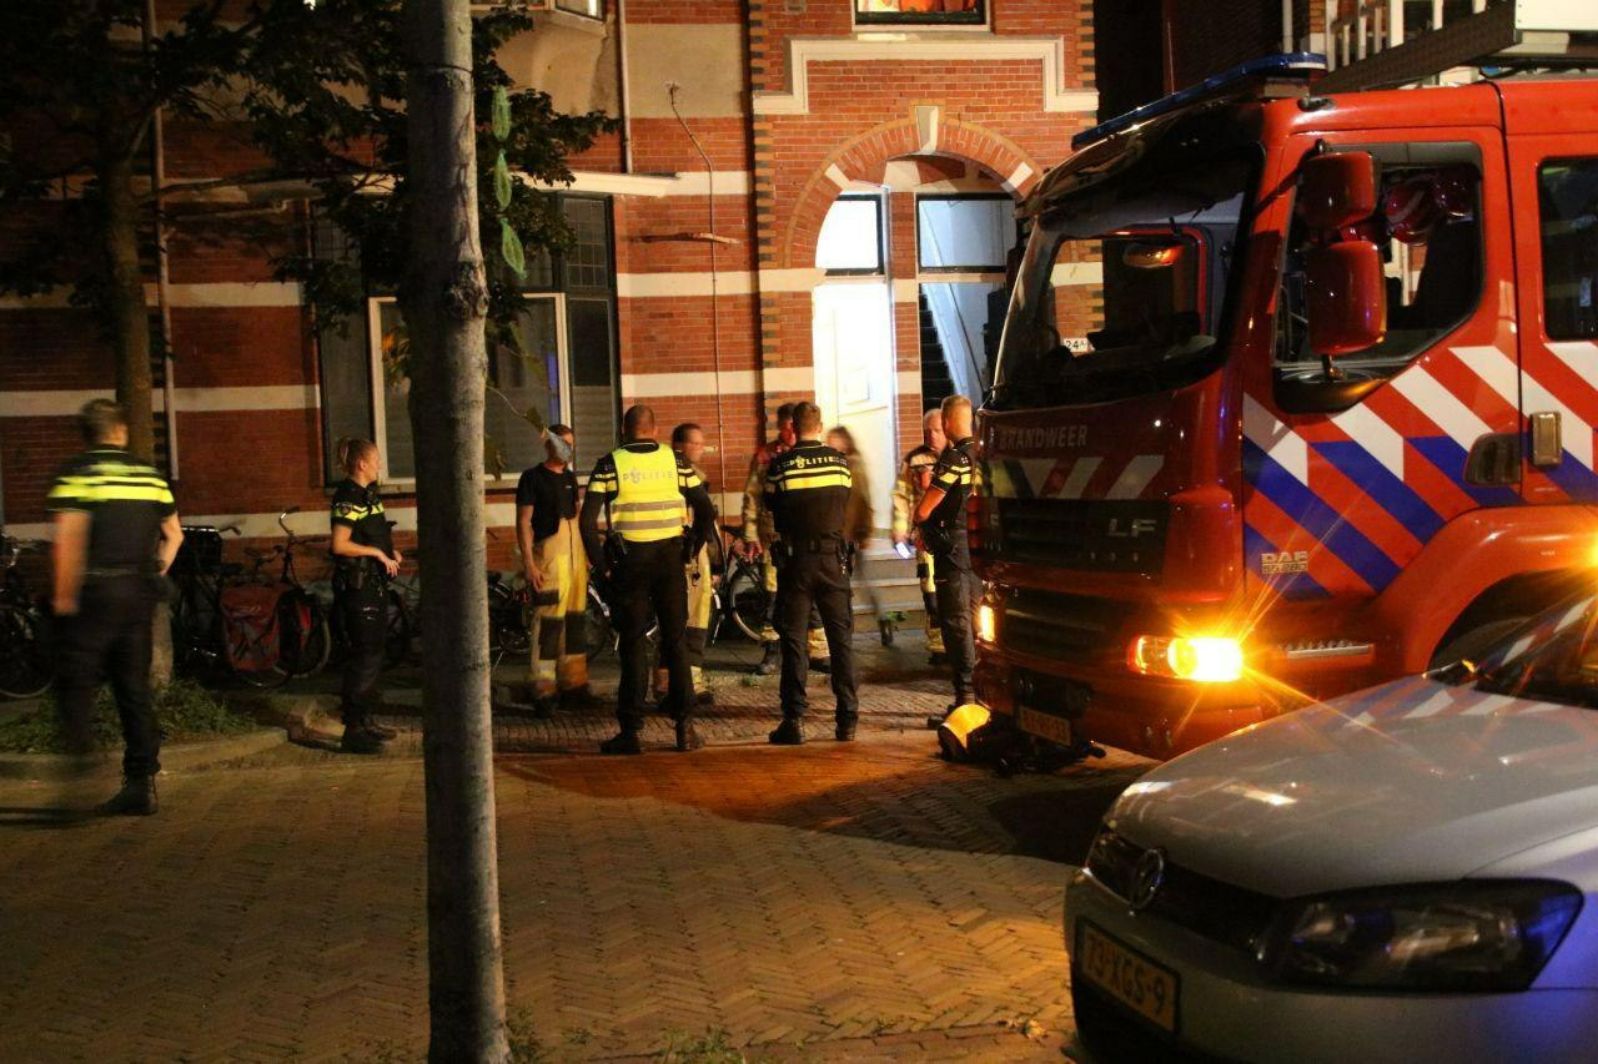 Zware vrachtwagen Gewend hefboom Stank door afzuigkap in woning Prins Hendrikstraat - RTV Focus